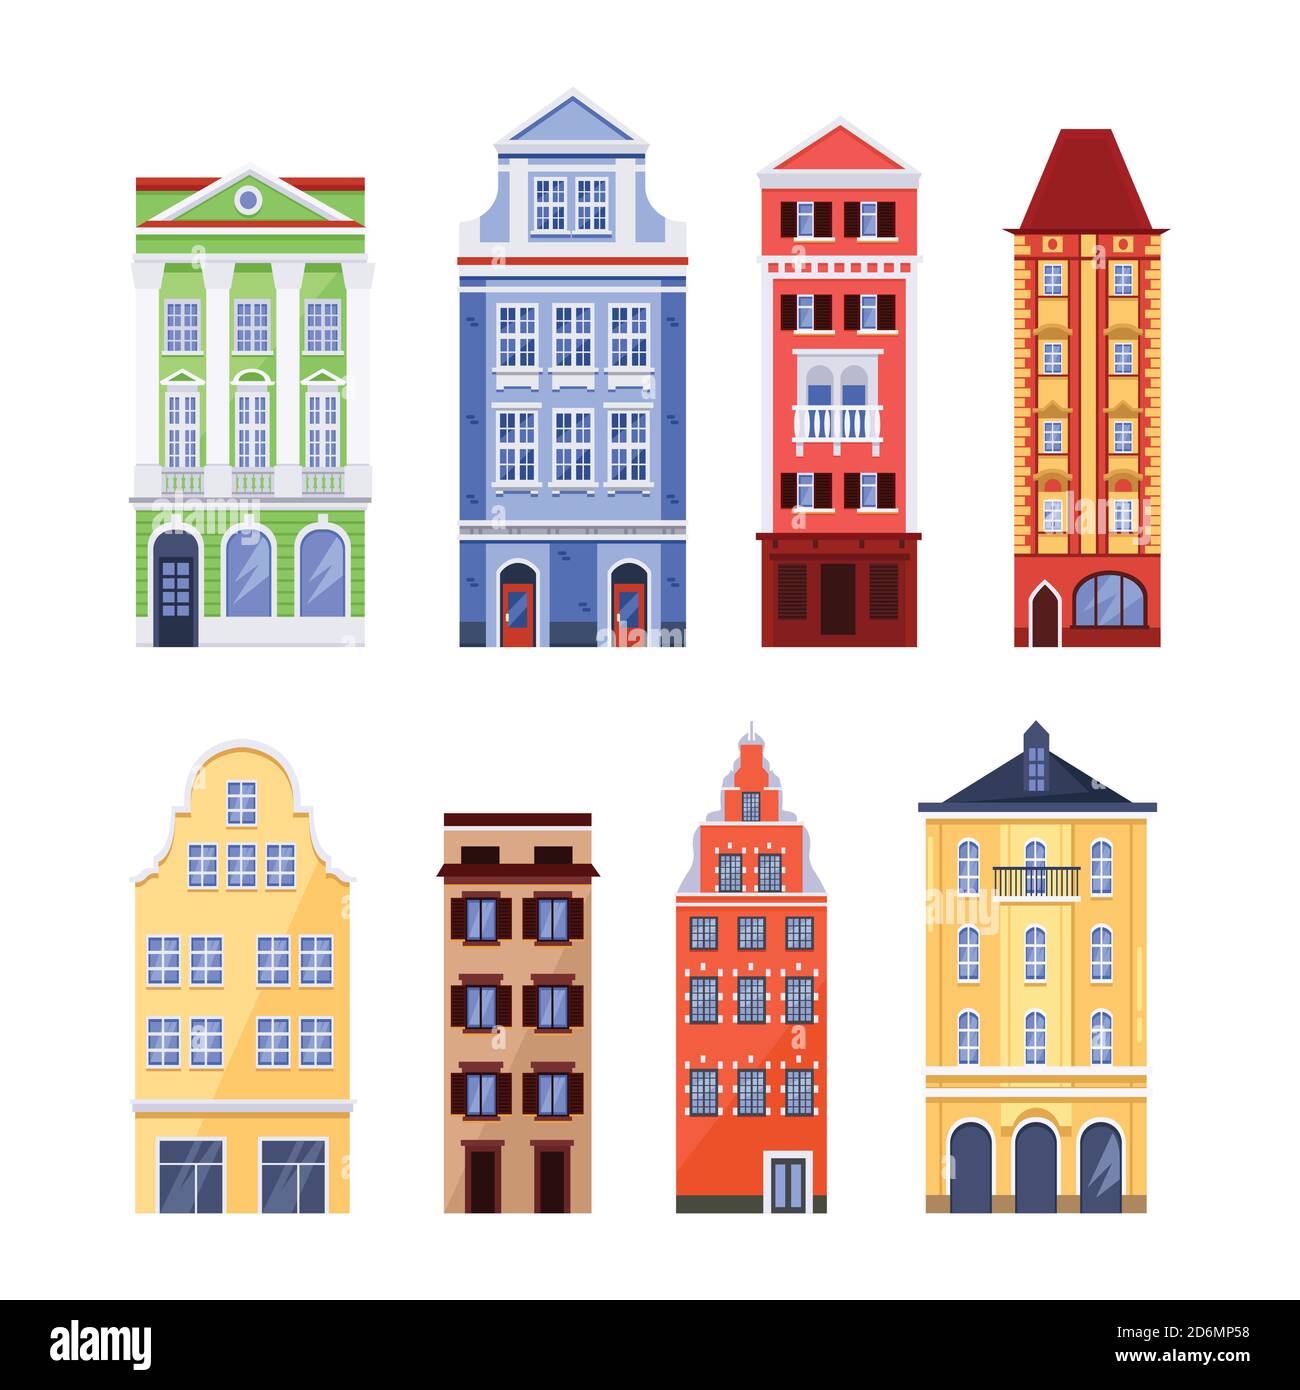 Vecchi edifici colorati, vettoriale piatta illustrazione isolata. Facciate di case europee tradizionali. Elementi di design dell'architettura cittadina. Illustrazione Vettoriale